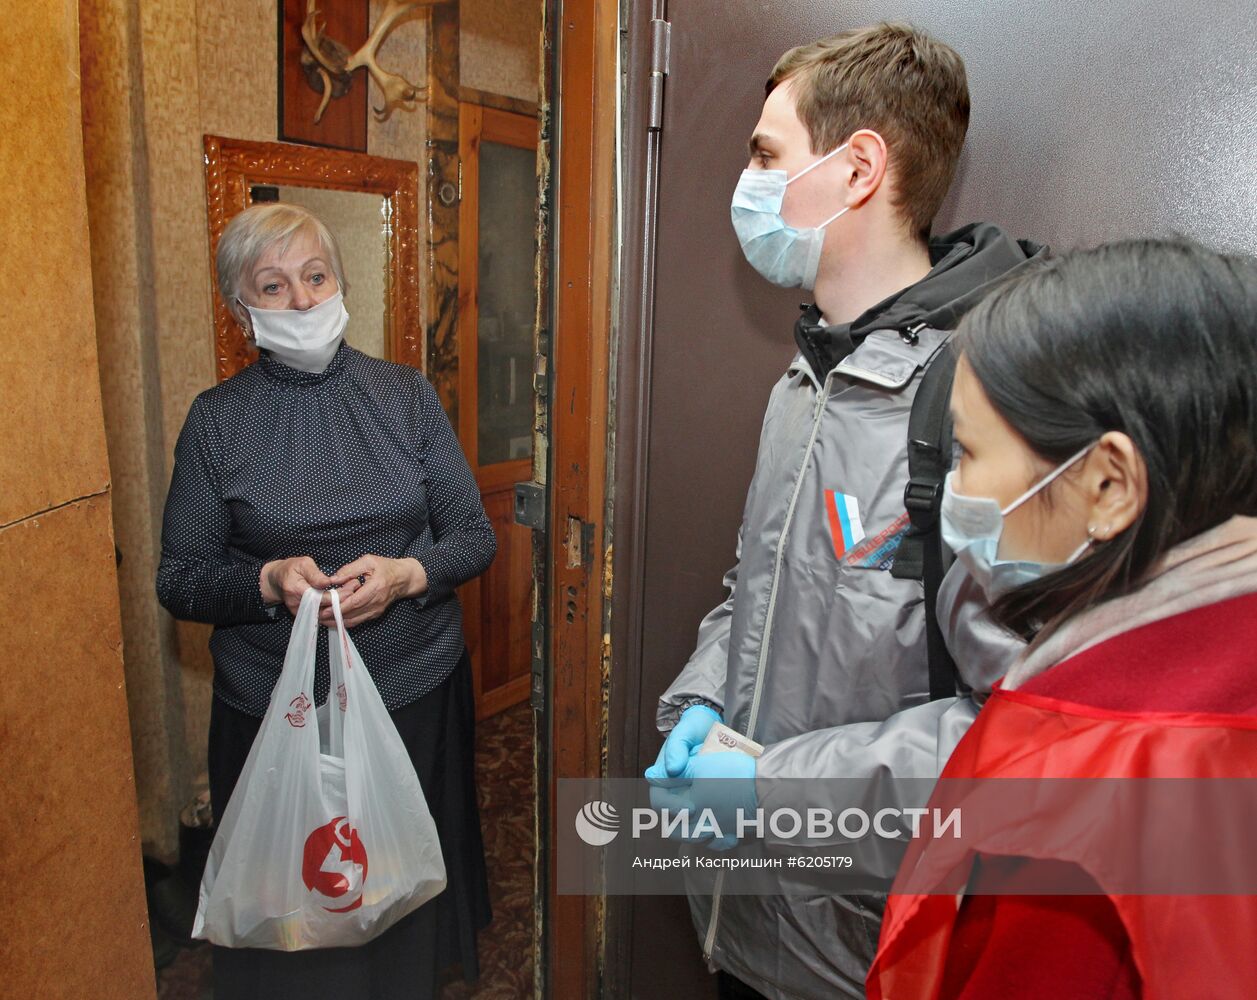 В Барнауле создан волонтерский центр для помощи гражданам в связи с угрозой распространения коронавируса